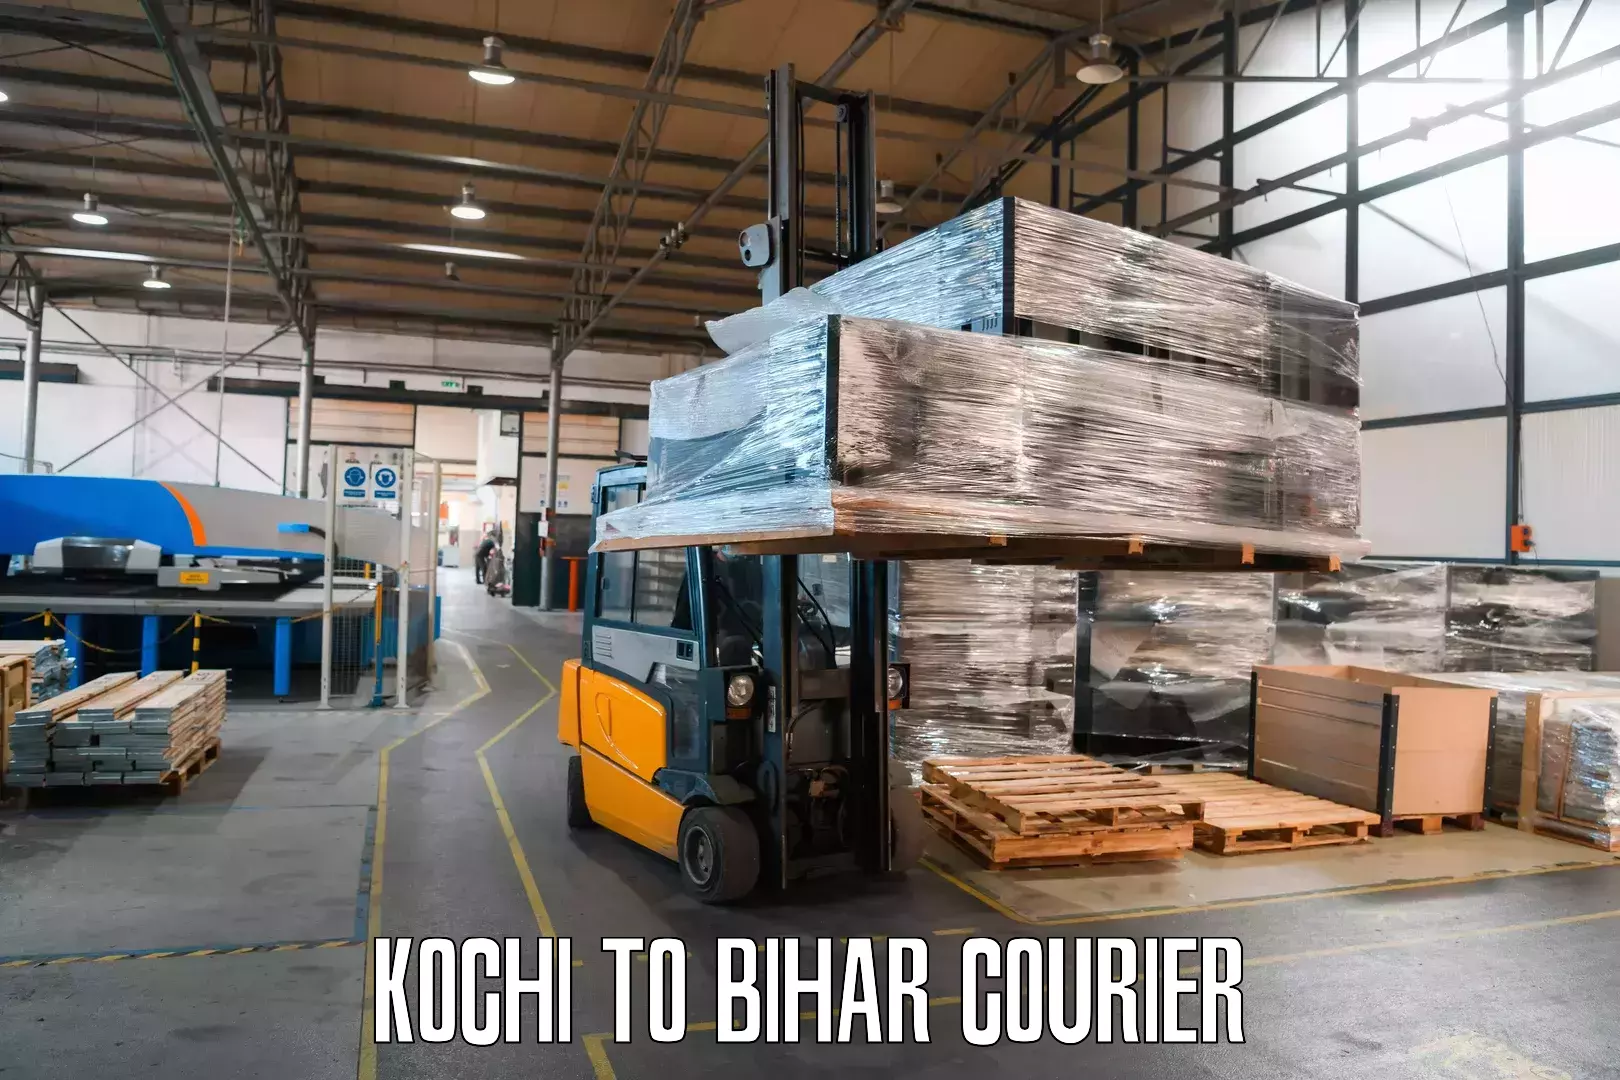 Digital shipping tools Kochi to Rajpur